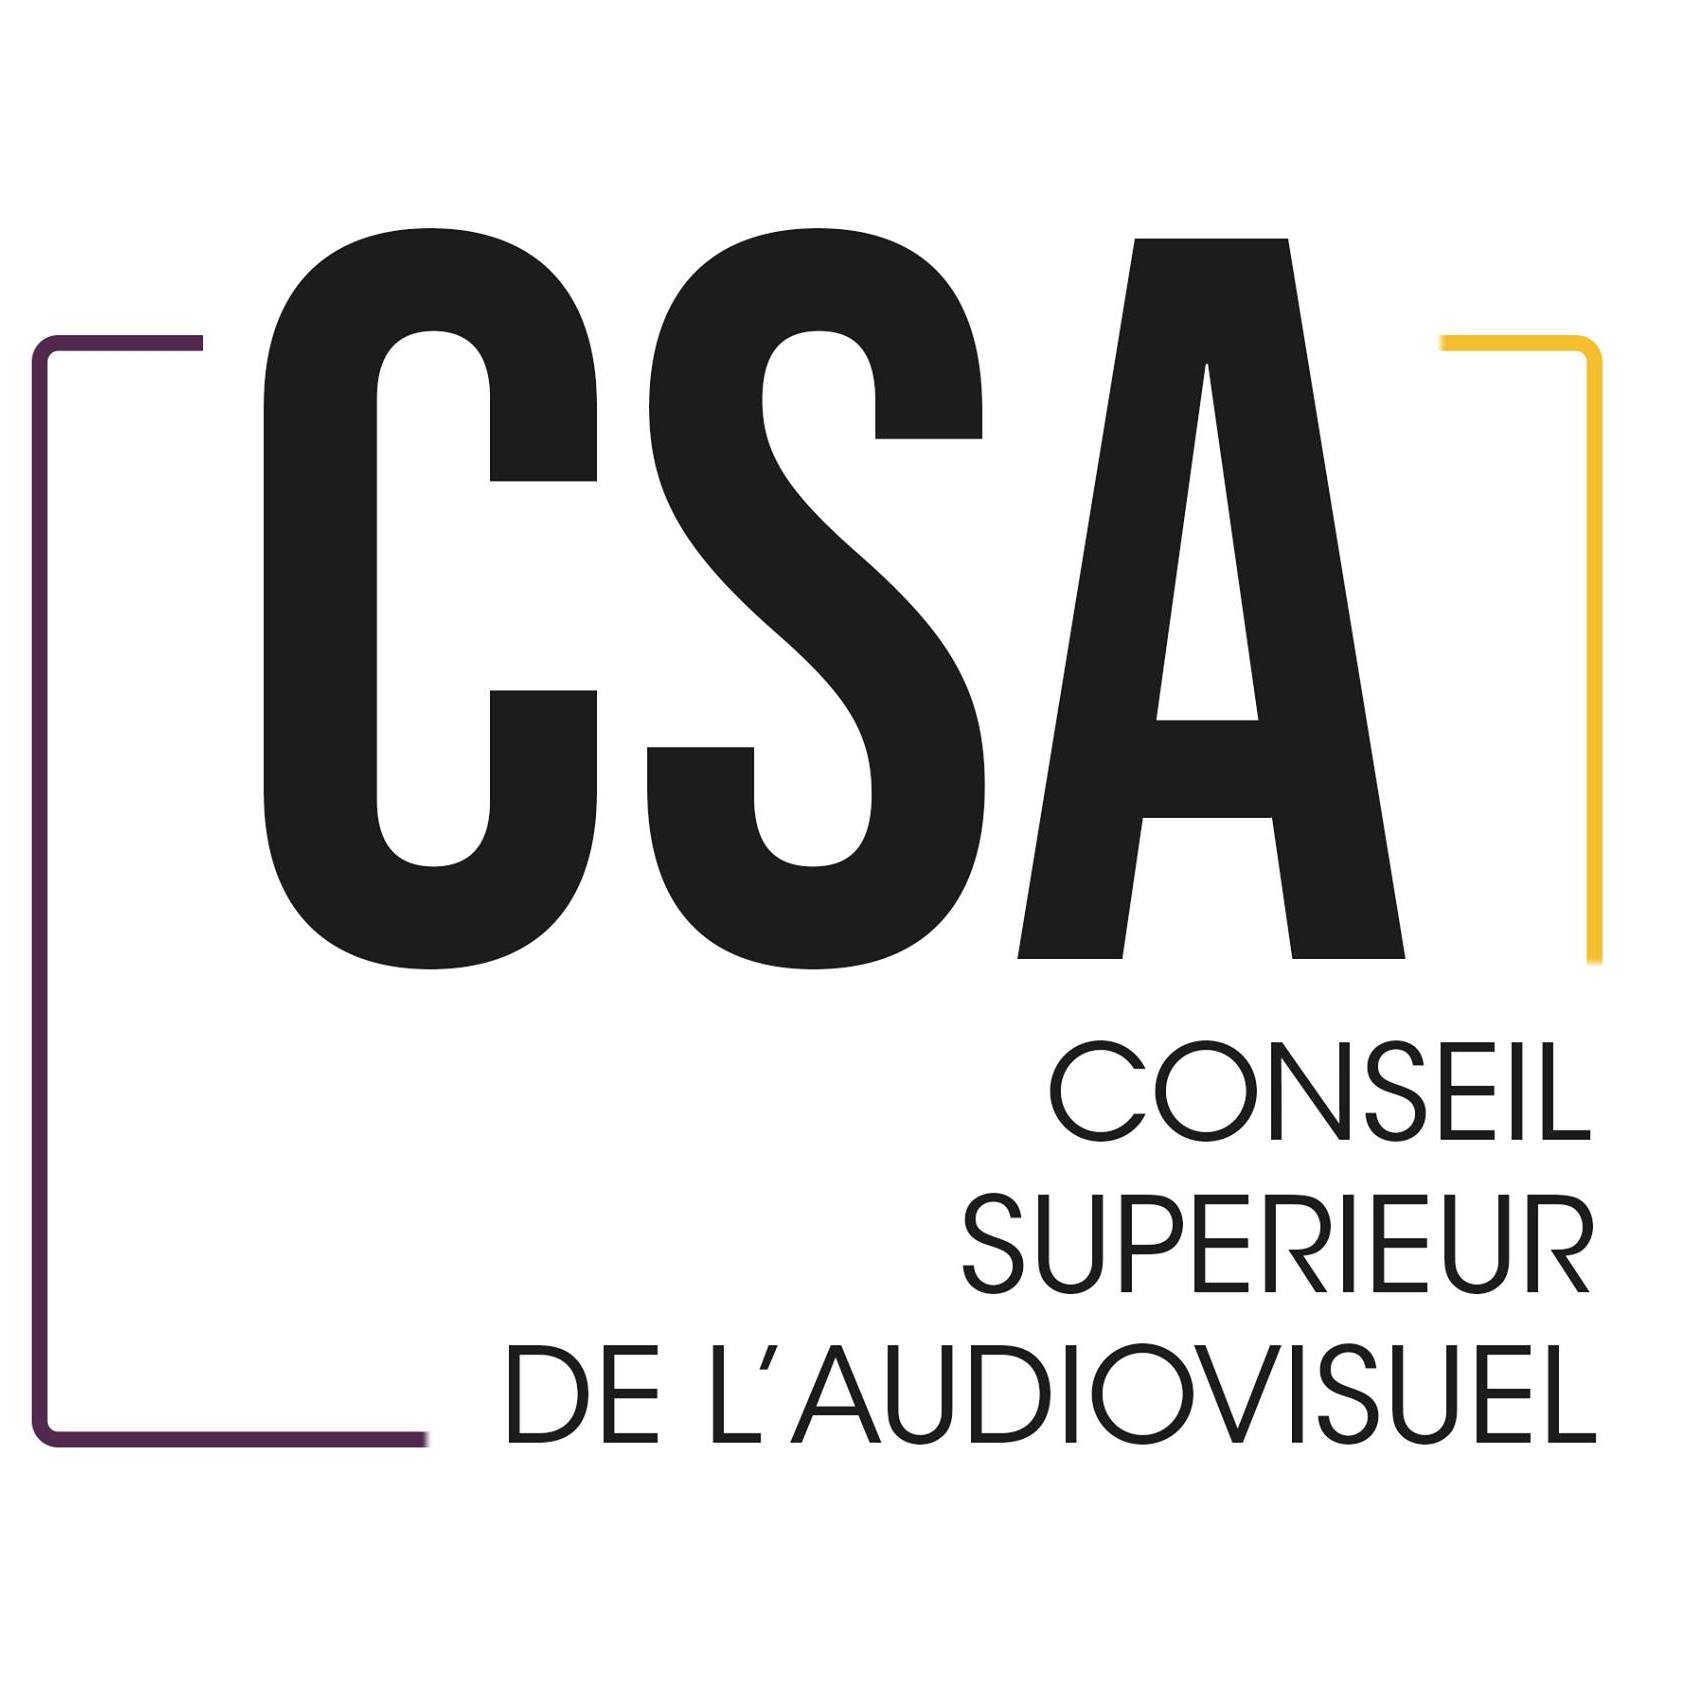 Covid-19 : le CSA Belge poursuit ses missions et adapte son cadre de travail